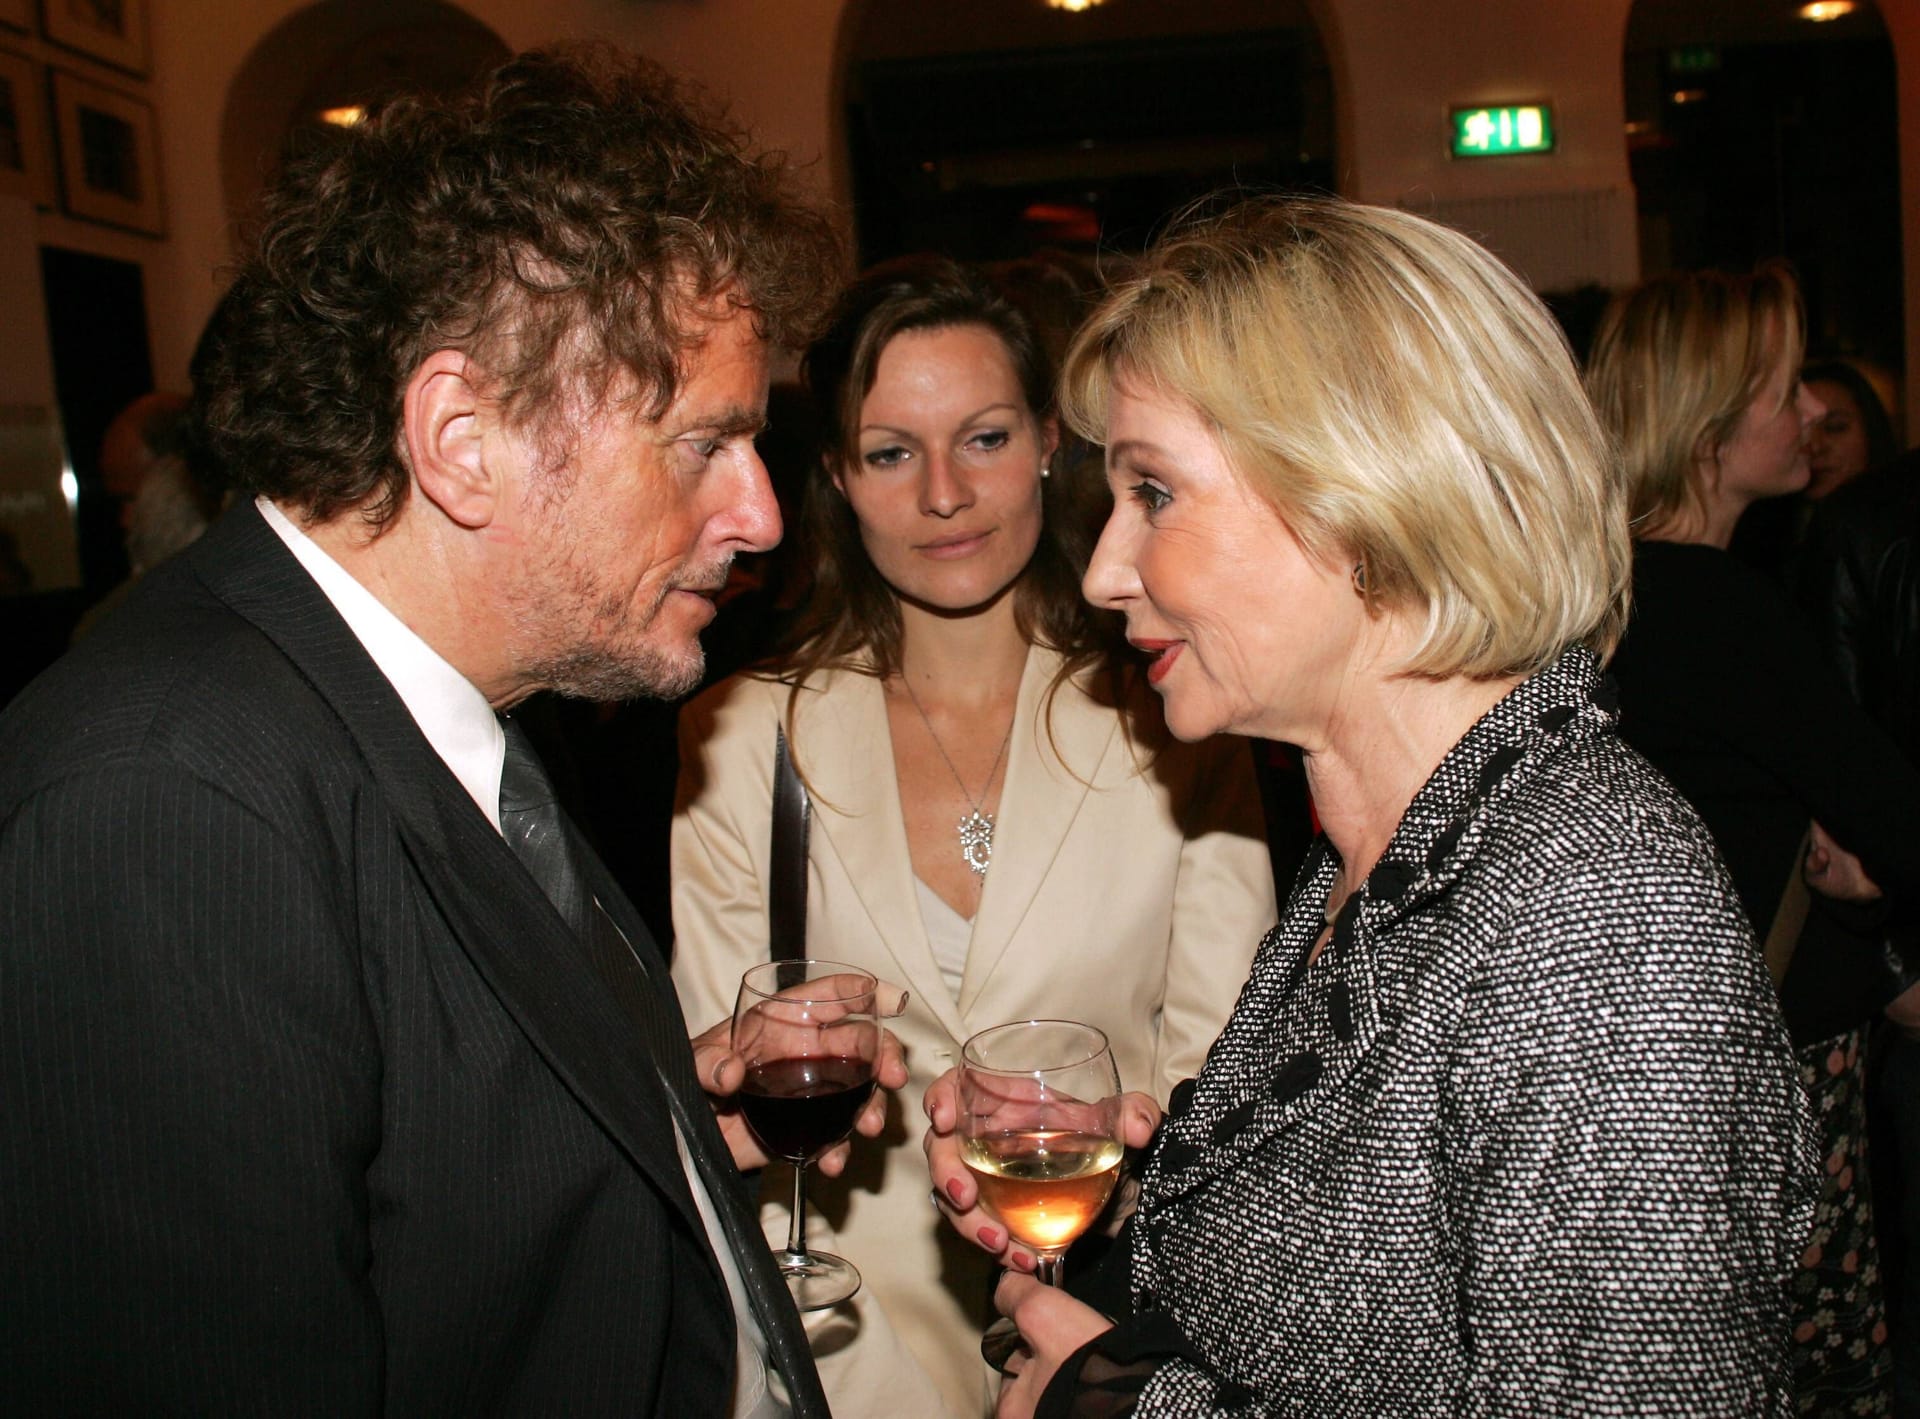 Liiert in den Siebzigern: Regisseur Dieter Wedel und Dagmar Berghoff, in der Mitte seine spätere Lebensgefährtin Dominique Voland, die Aufnahme stammt aus dem Jahr 2005.